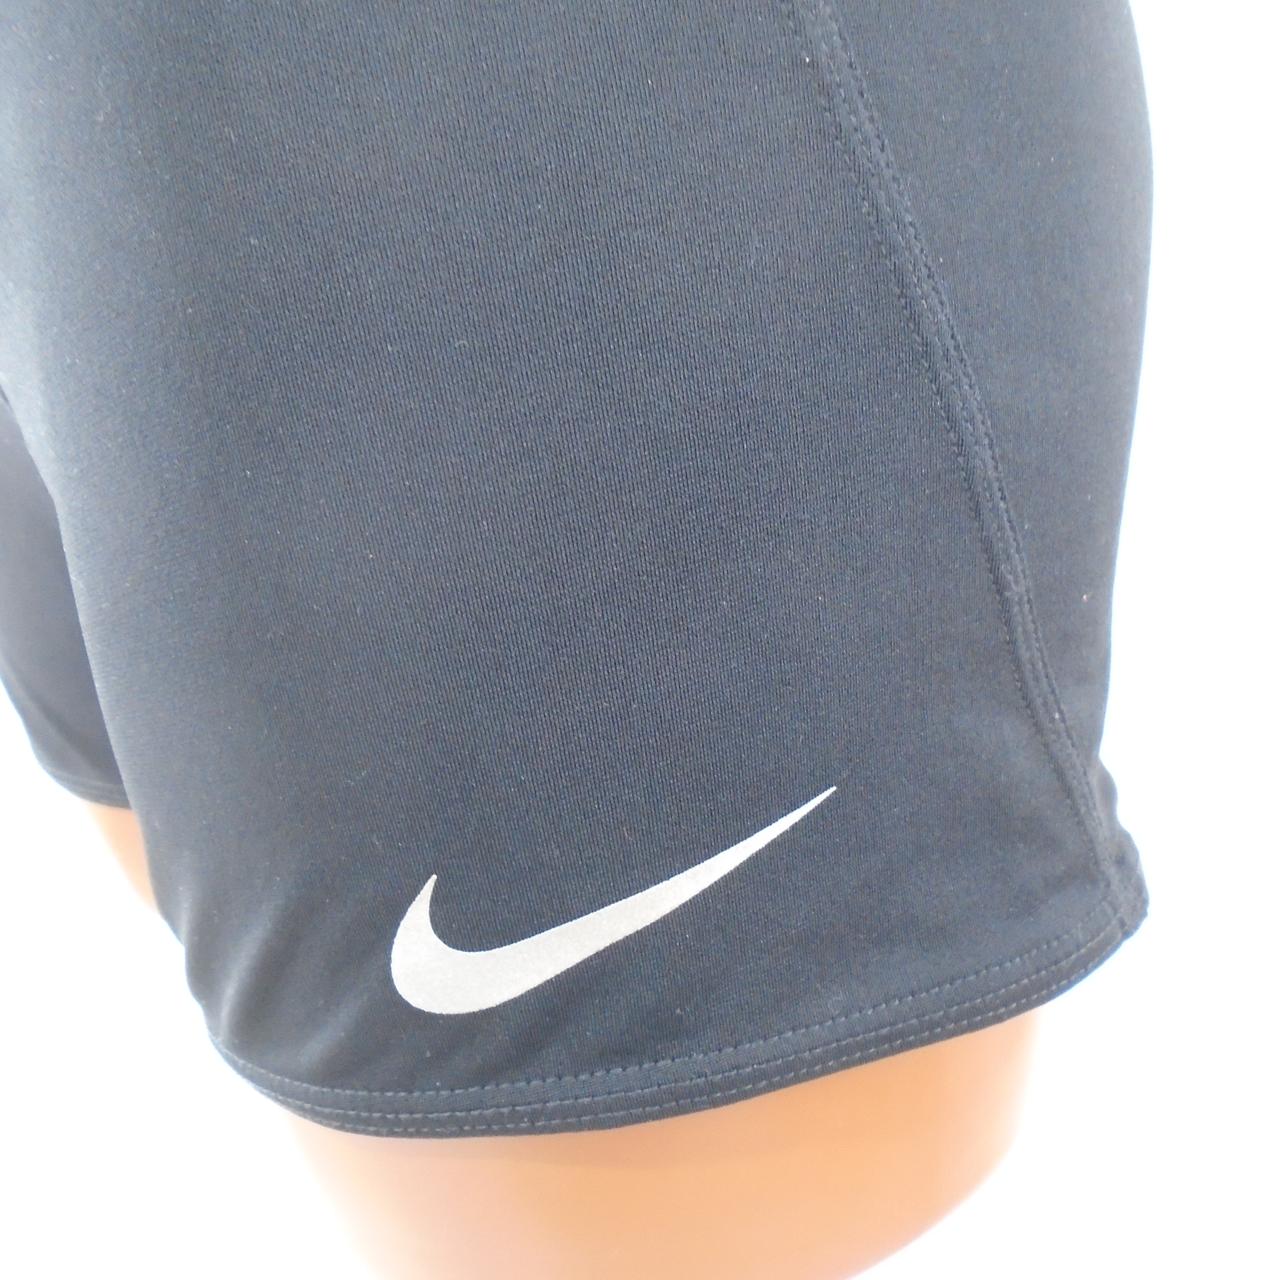 Pantalones cortos de mujer Nike. Negro. L. Usado. Bien